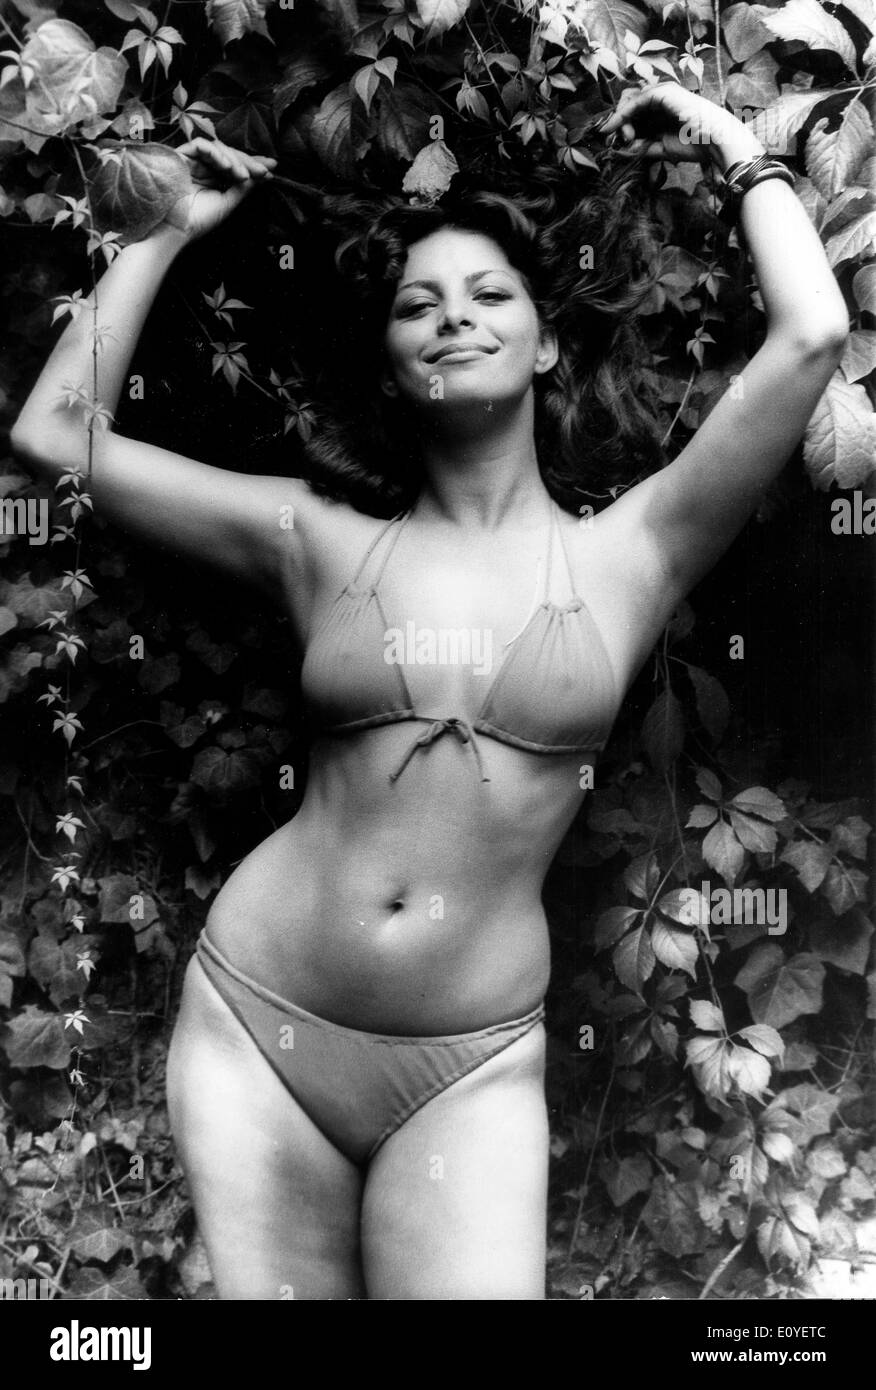 Gen 01, 1970 - Londra, Inghilterra, Regno Unito - File foto circa  sessanta-1970s. Le ragazze che posano in bikini in sfilate di moda,  germogli e sulle spiagge di abbronzatura. Secondo la versione